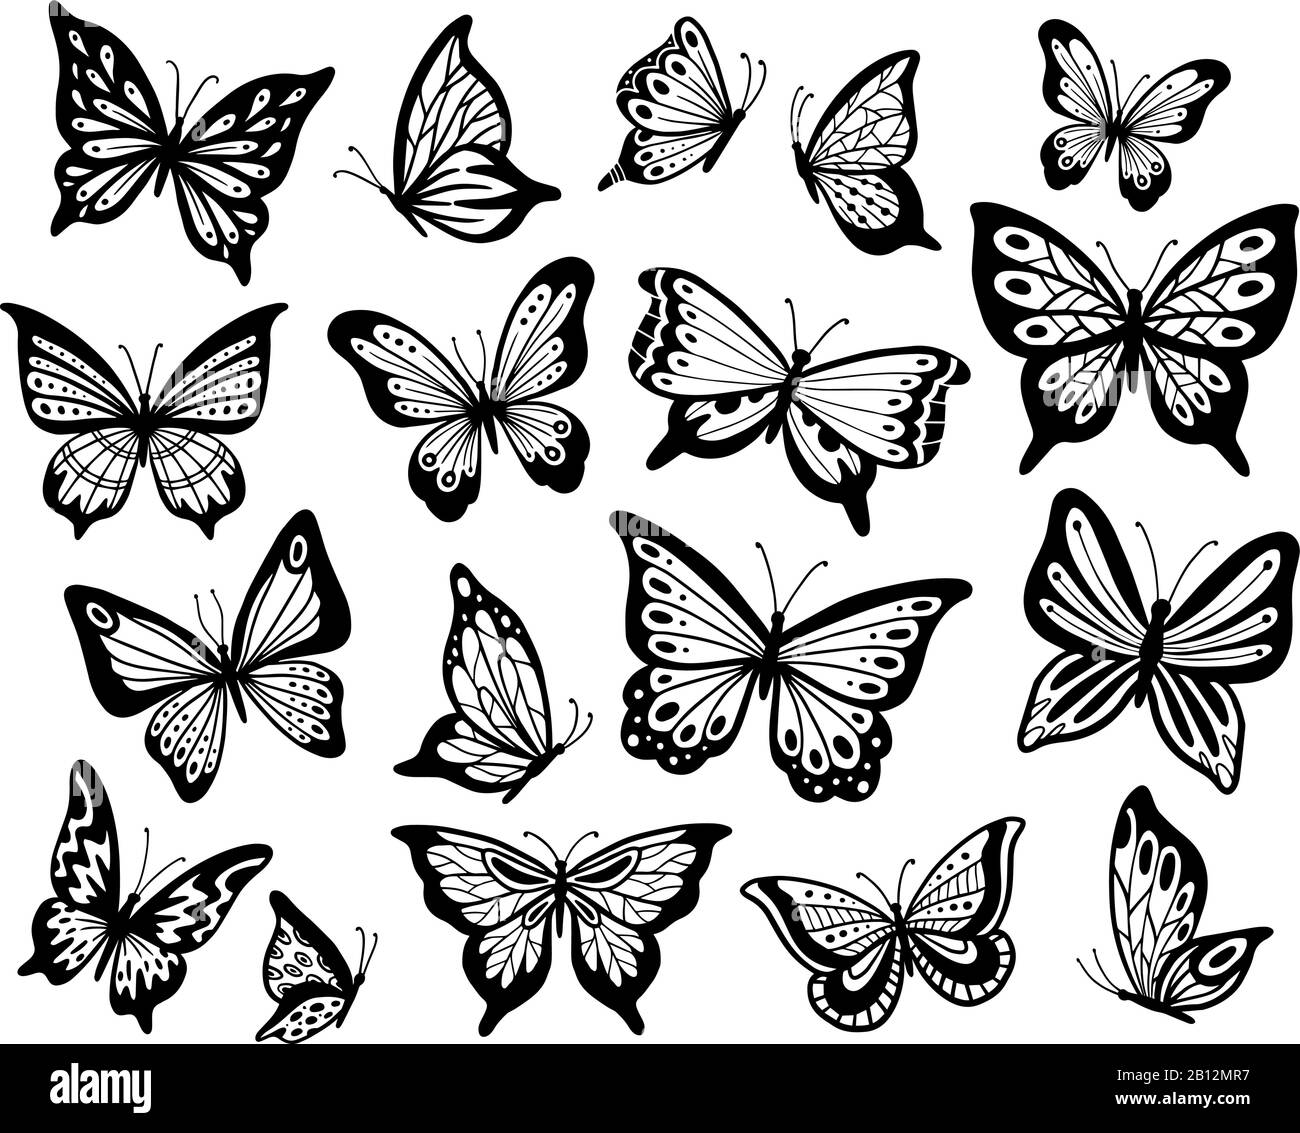 Disegno farfalle immagini e fotografie stock ad alta risoluzione - Alamy